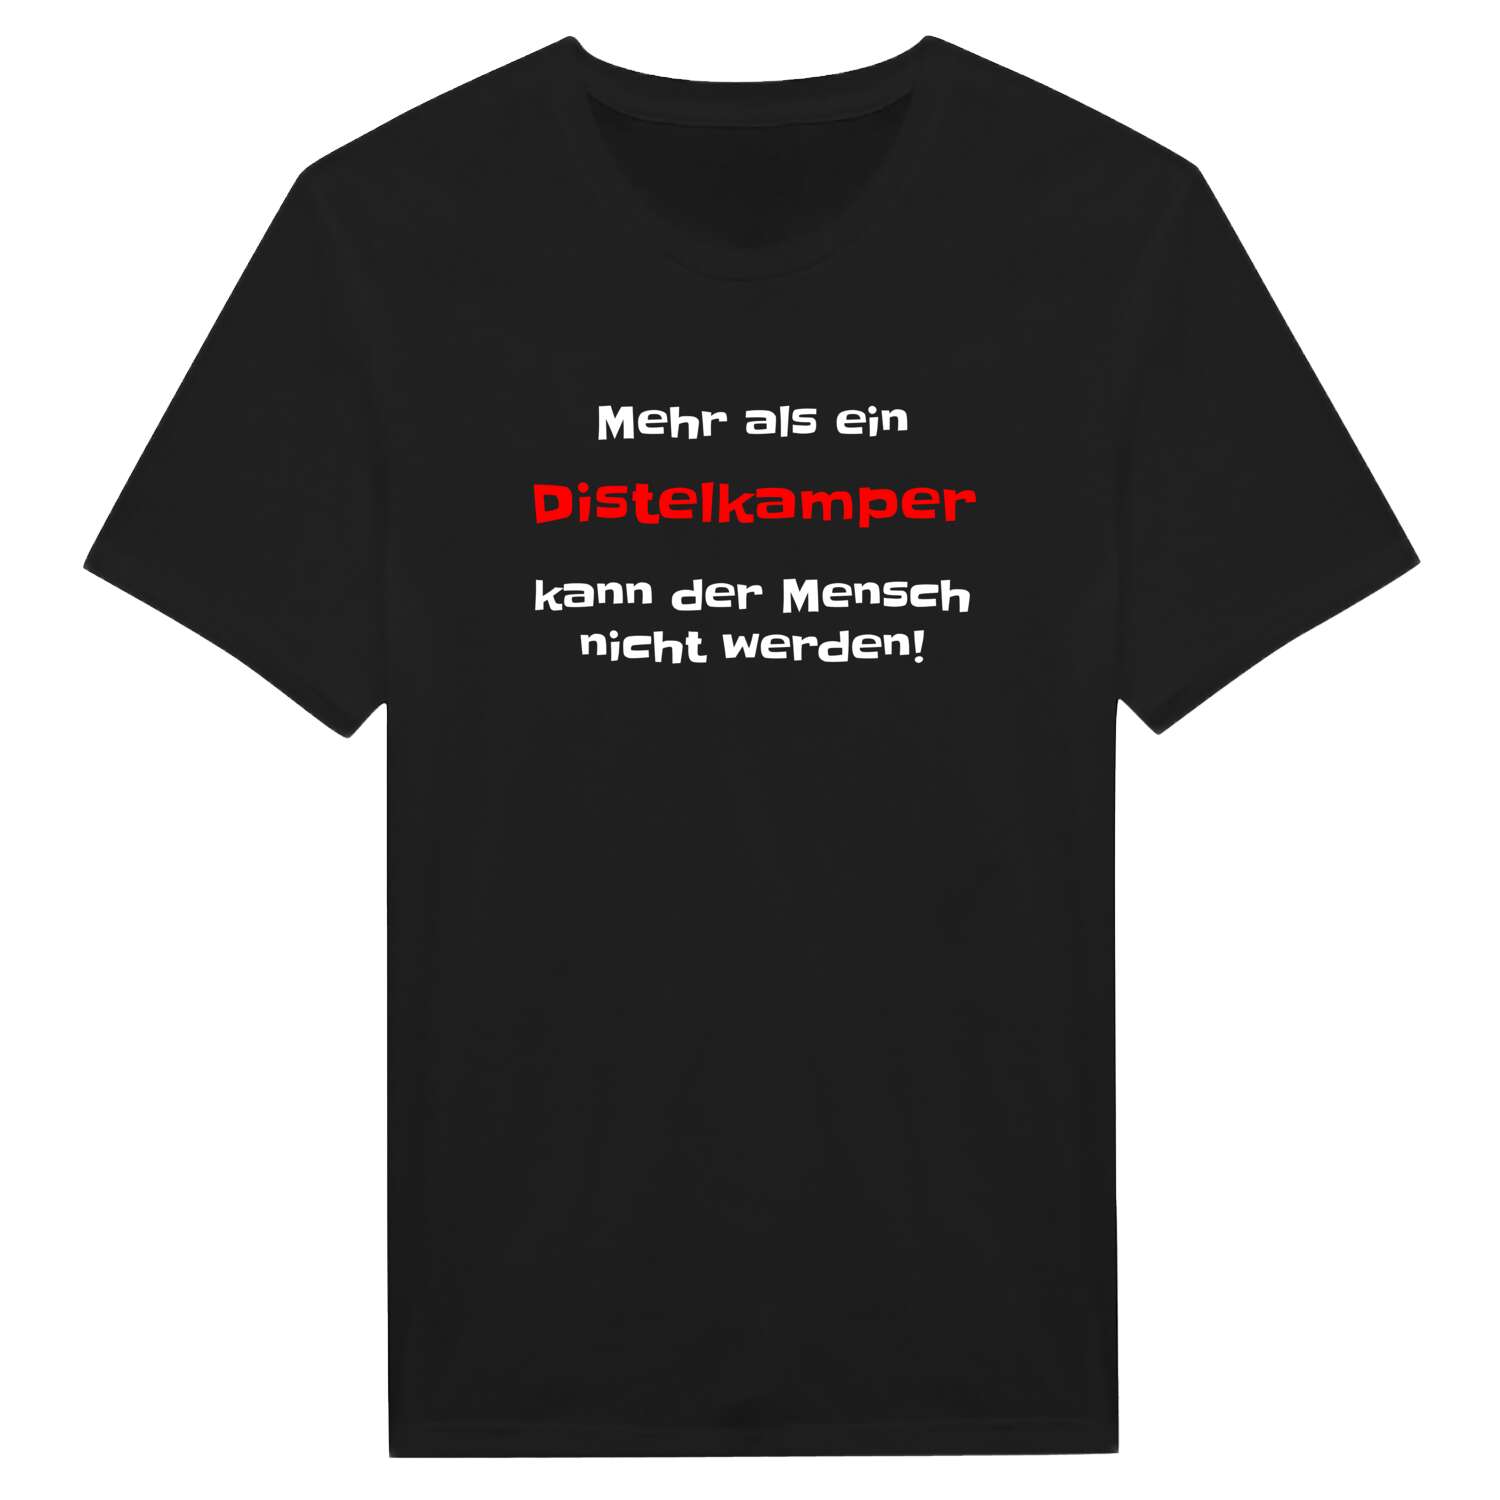 Distelkamp T-Shirt »Mehr als ein«